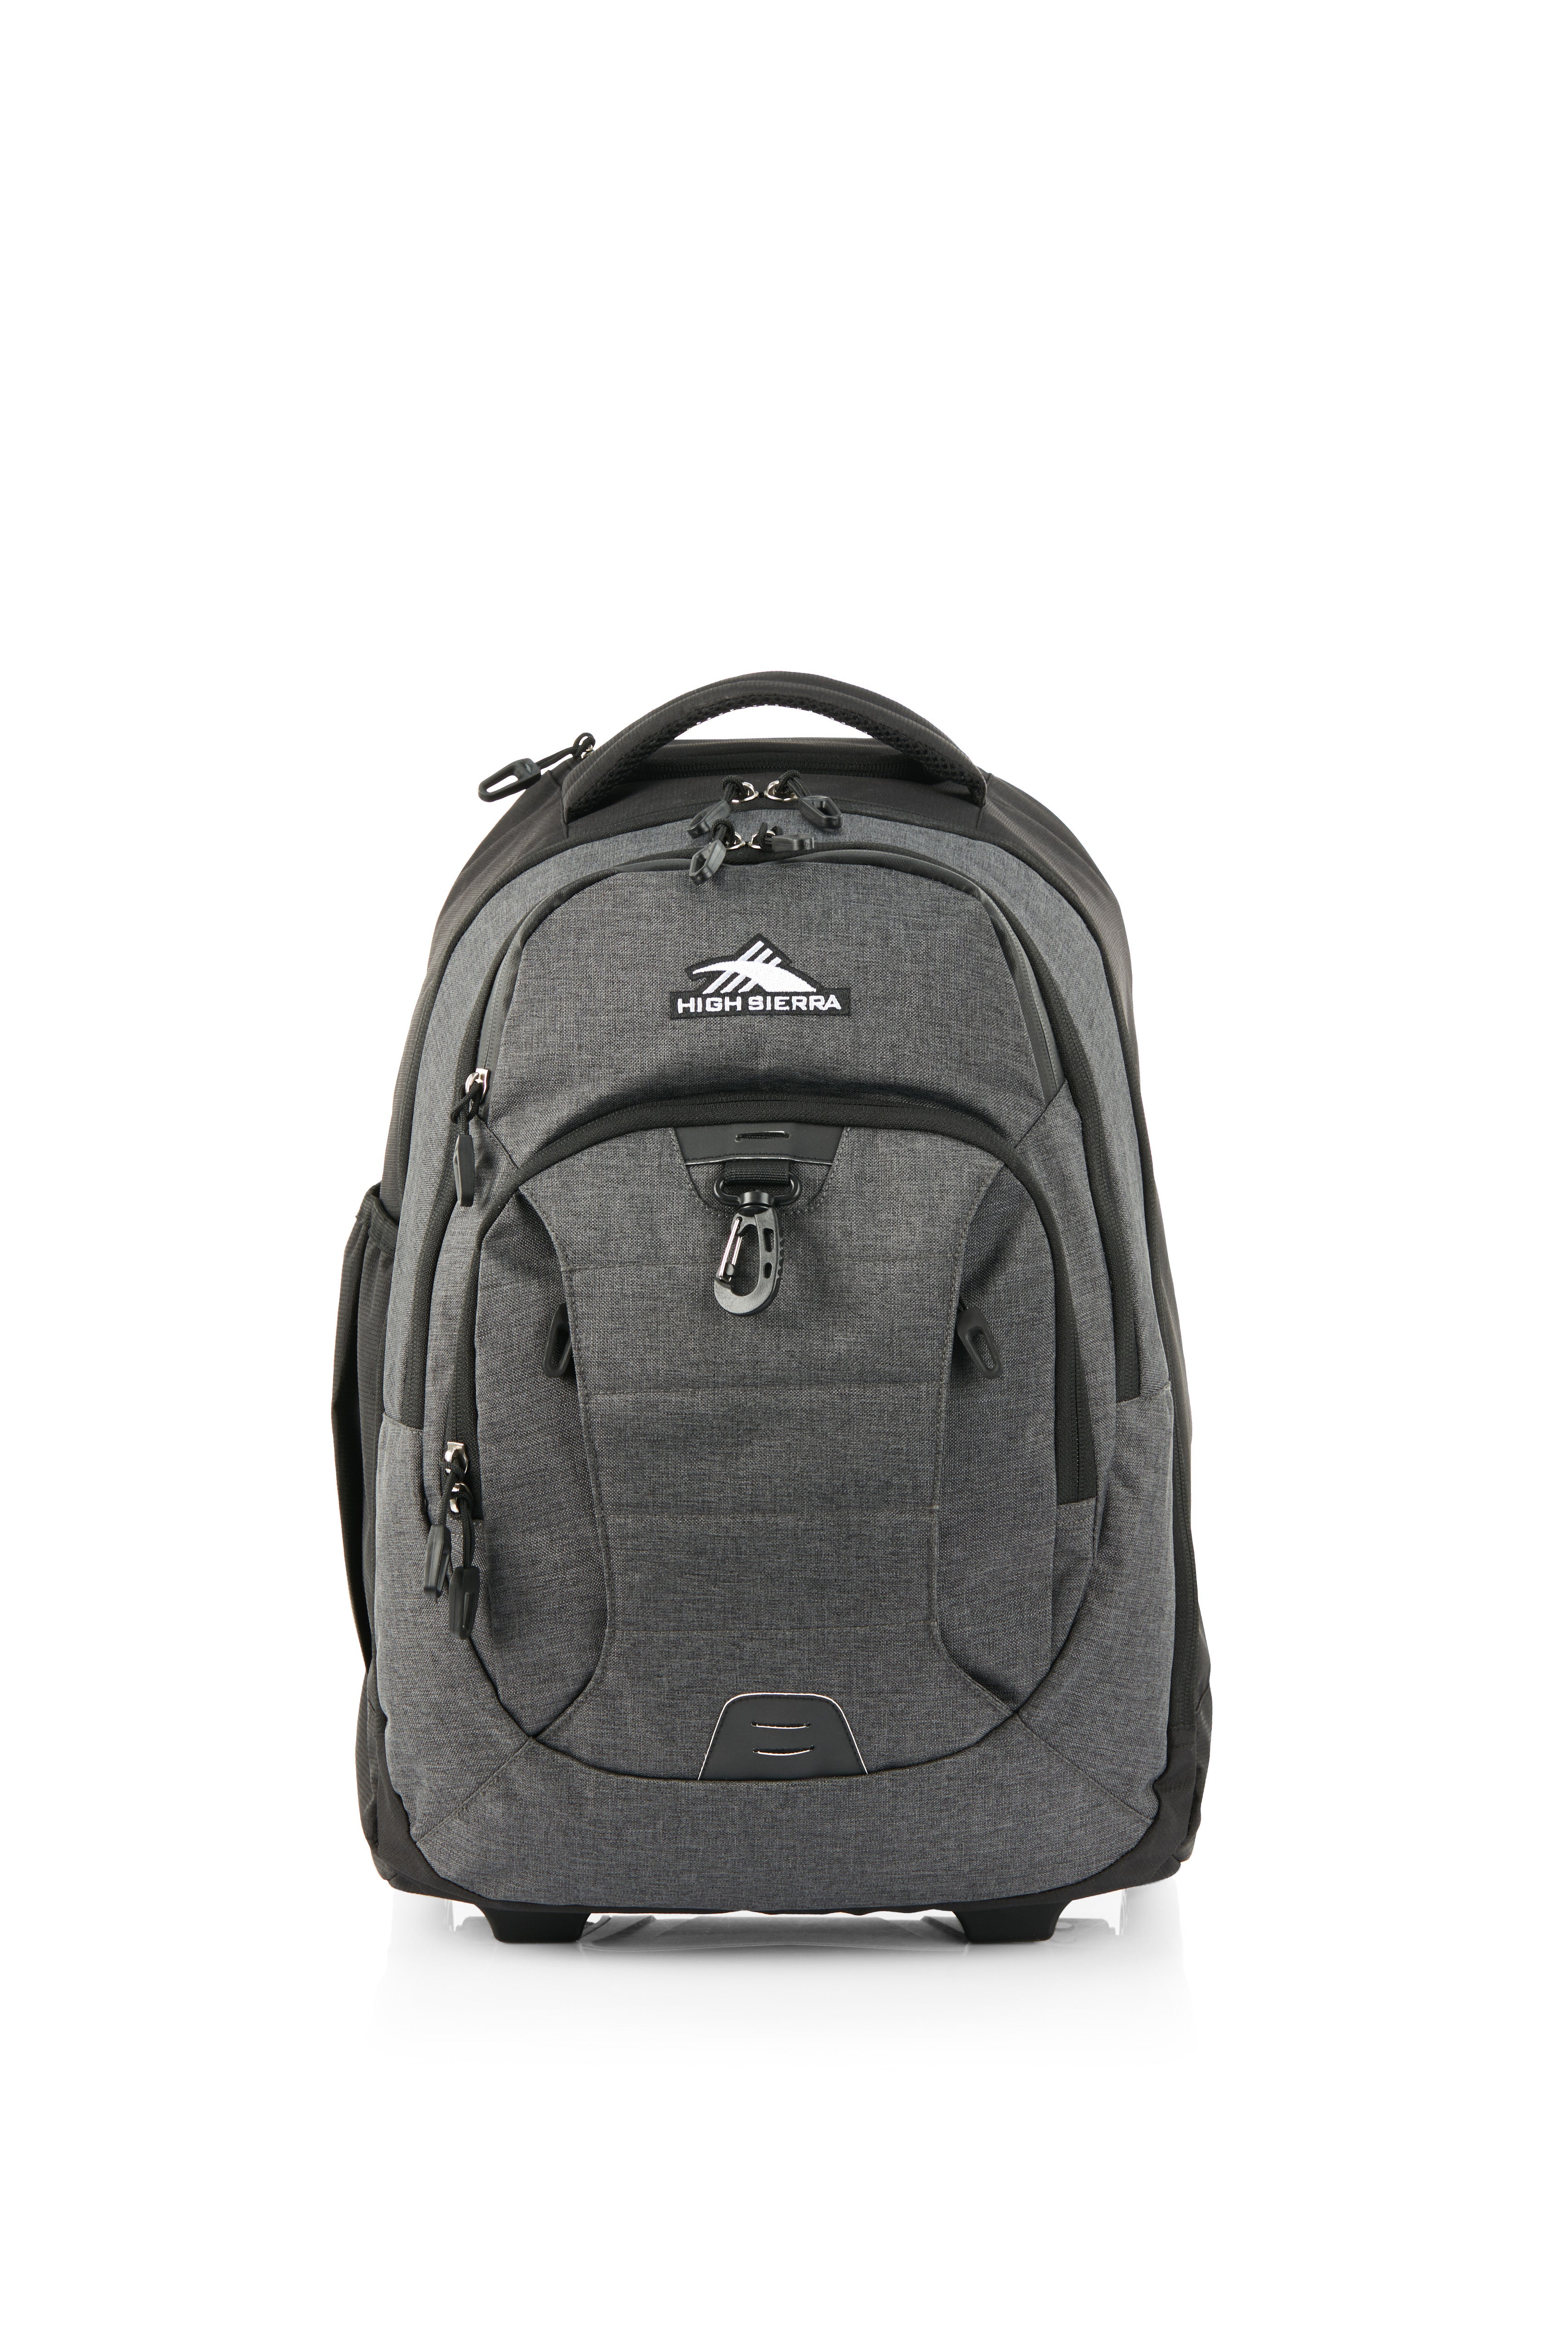 High Sierra - Jarvis Pro backpack on wheels - Black-1